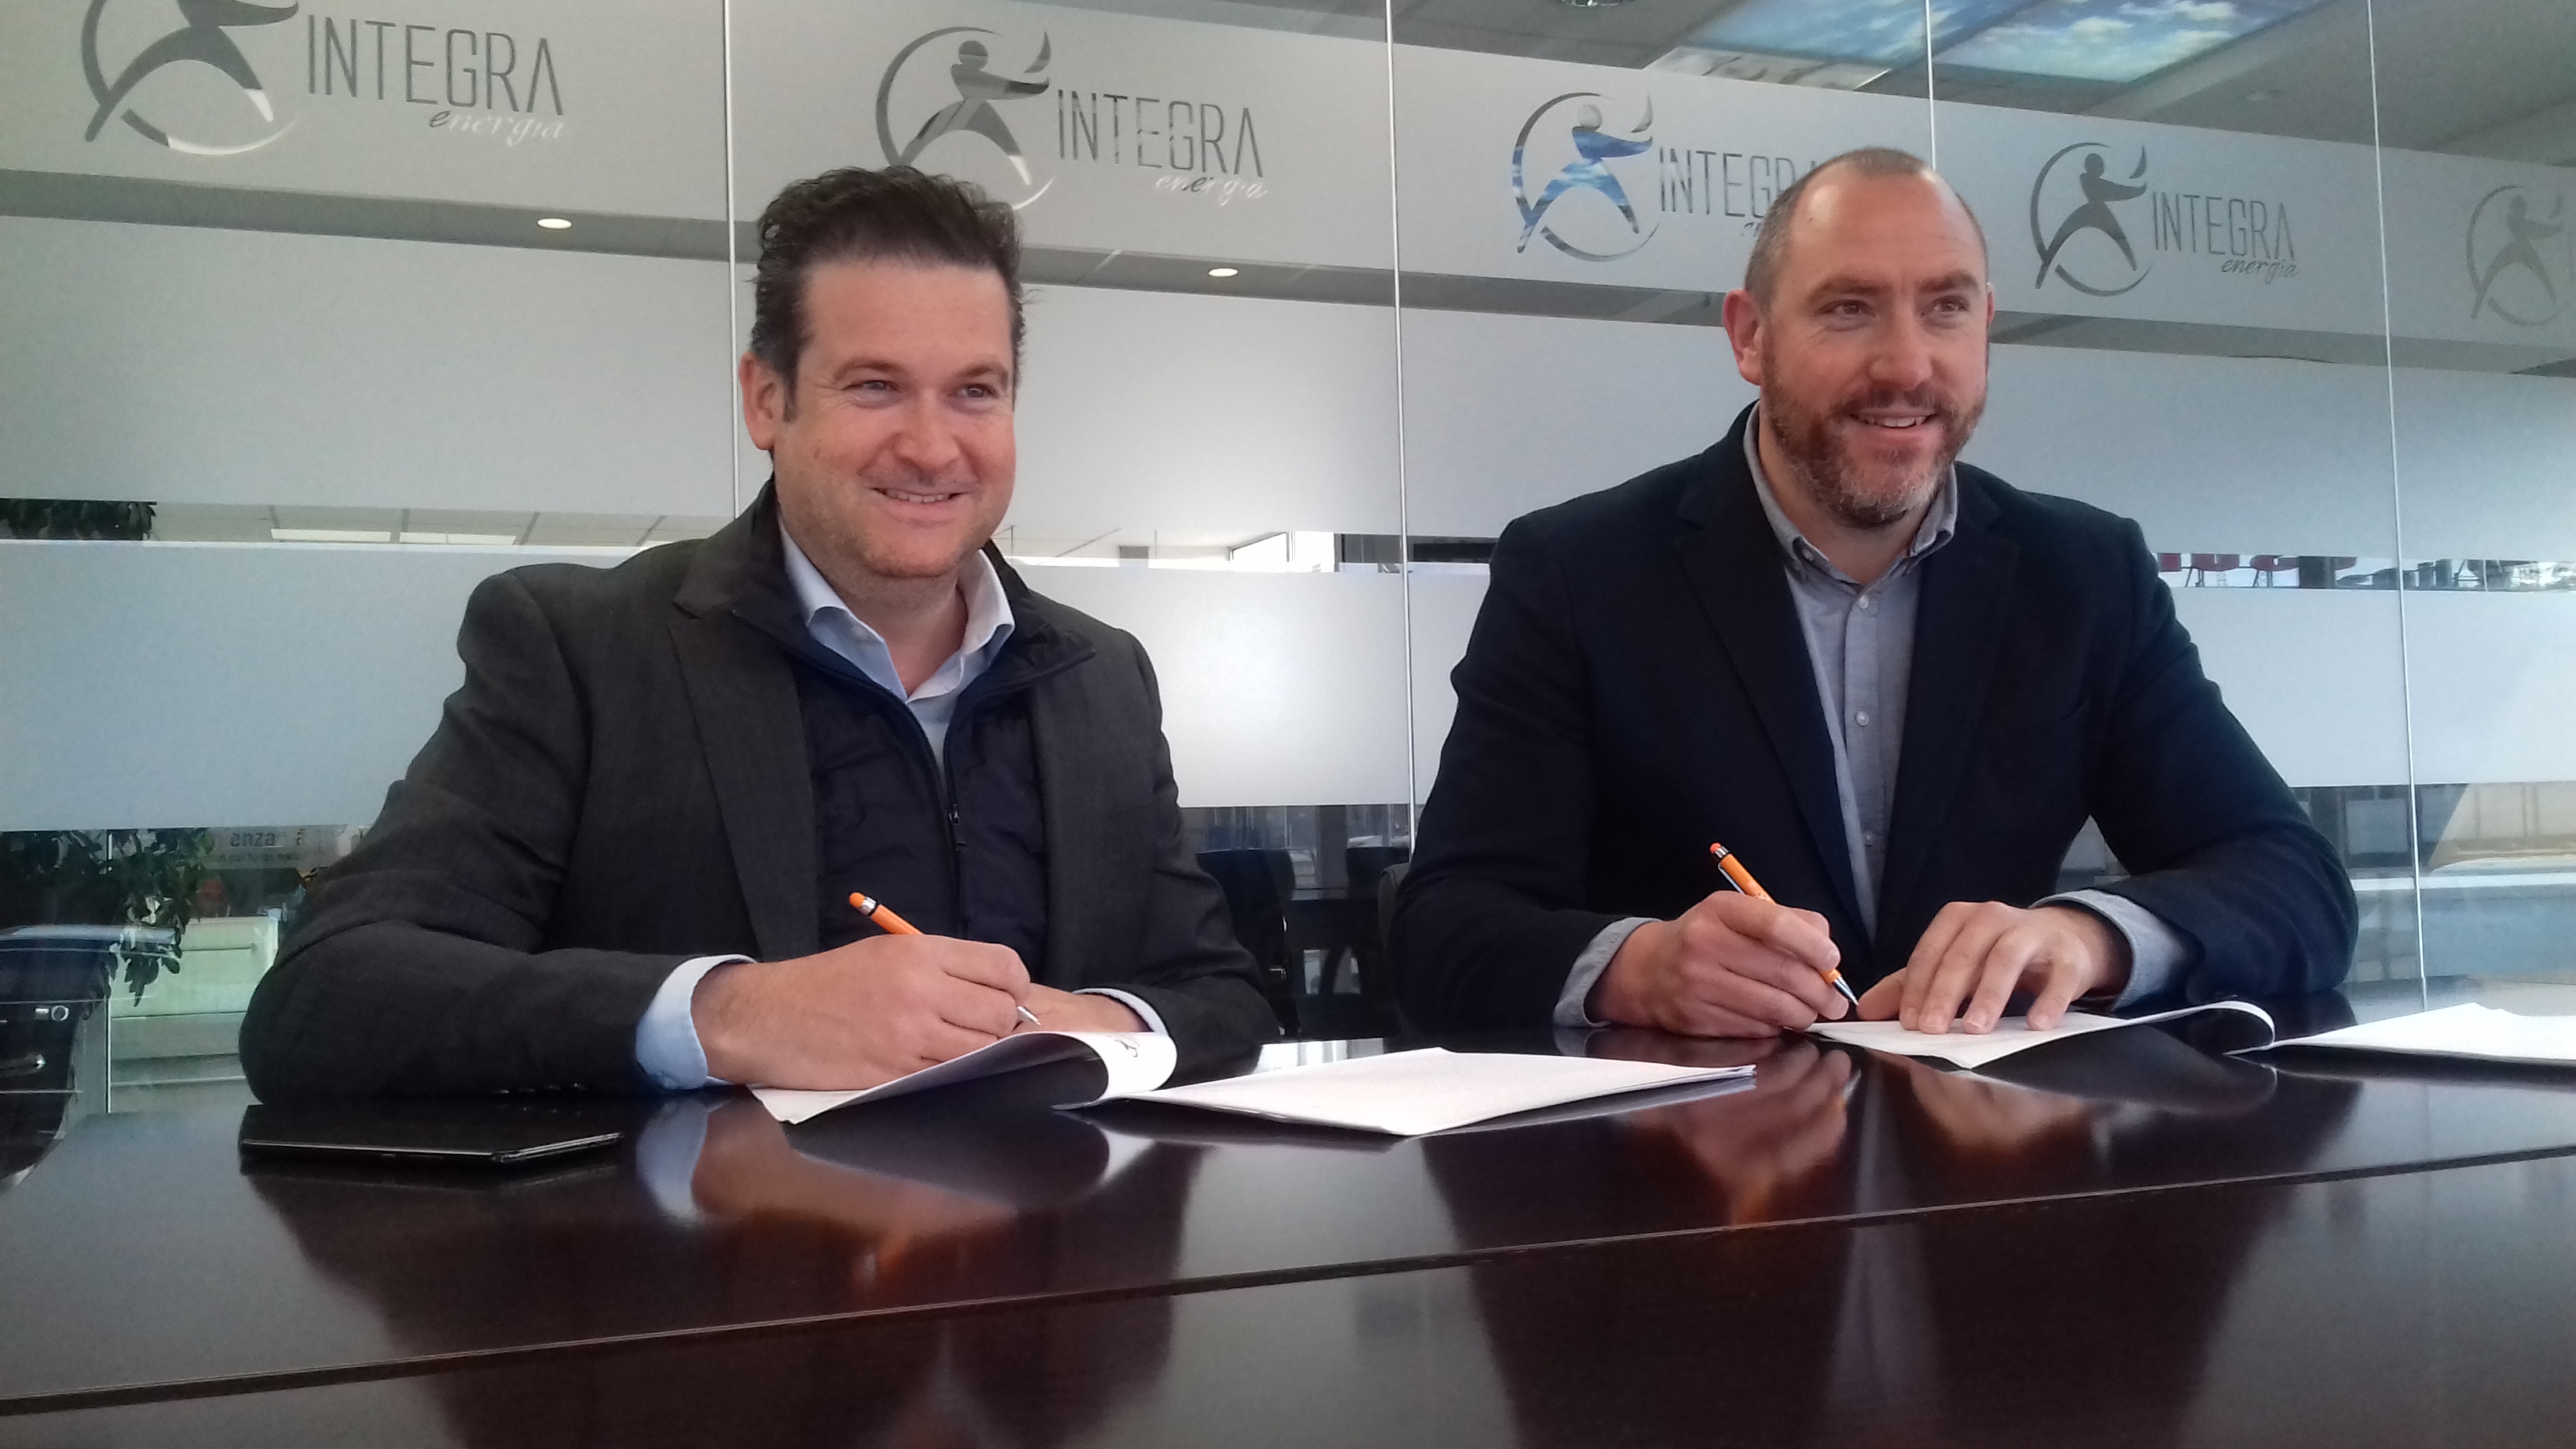 Integra Energía renueva su acuerdo de patrocinio con el Oviedo Baloncesto